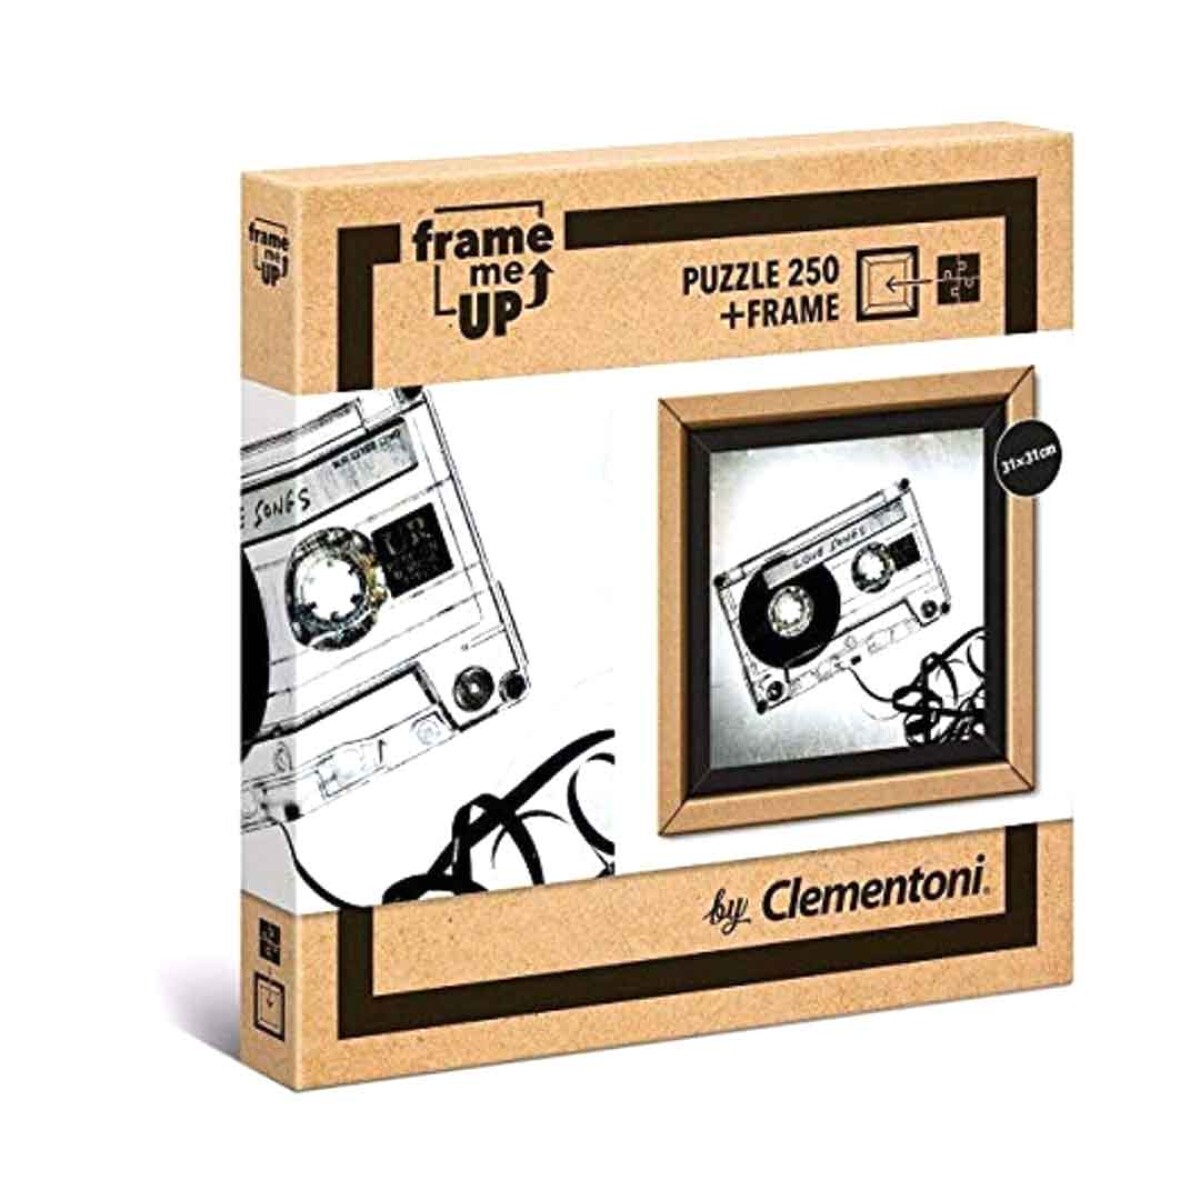 Puzzle Clementoni 250 piezas Cassete Frame Marco Encuadre - 001 